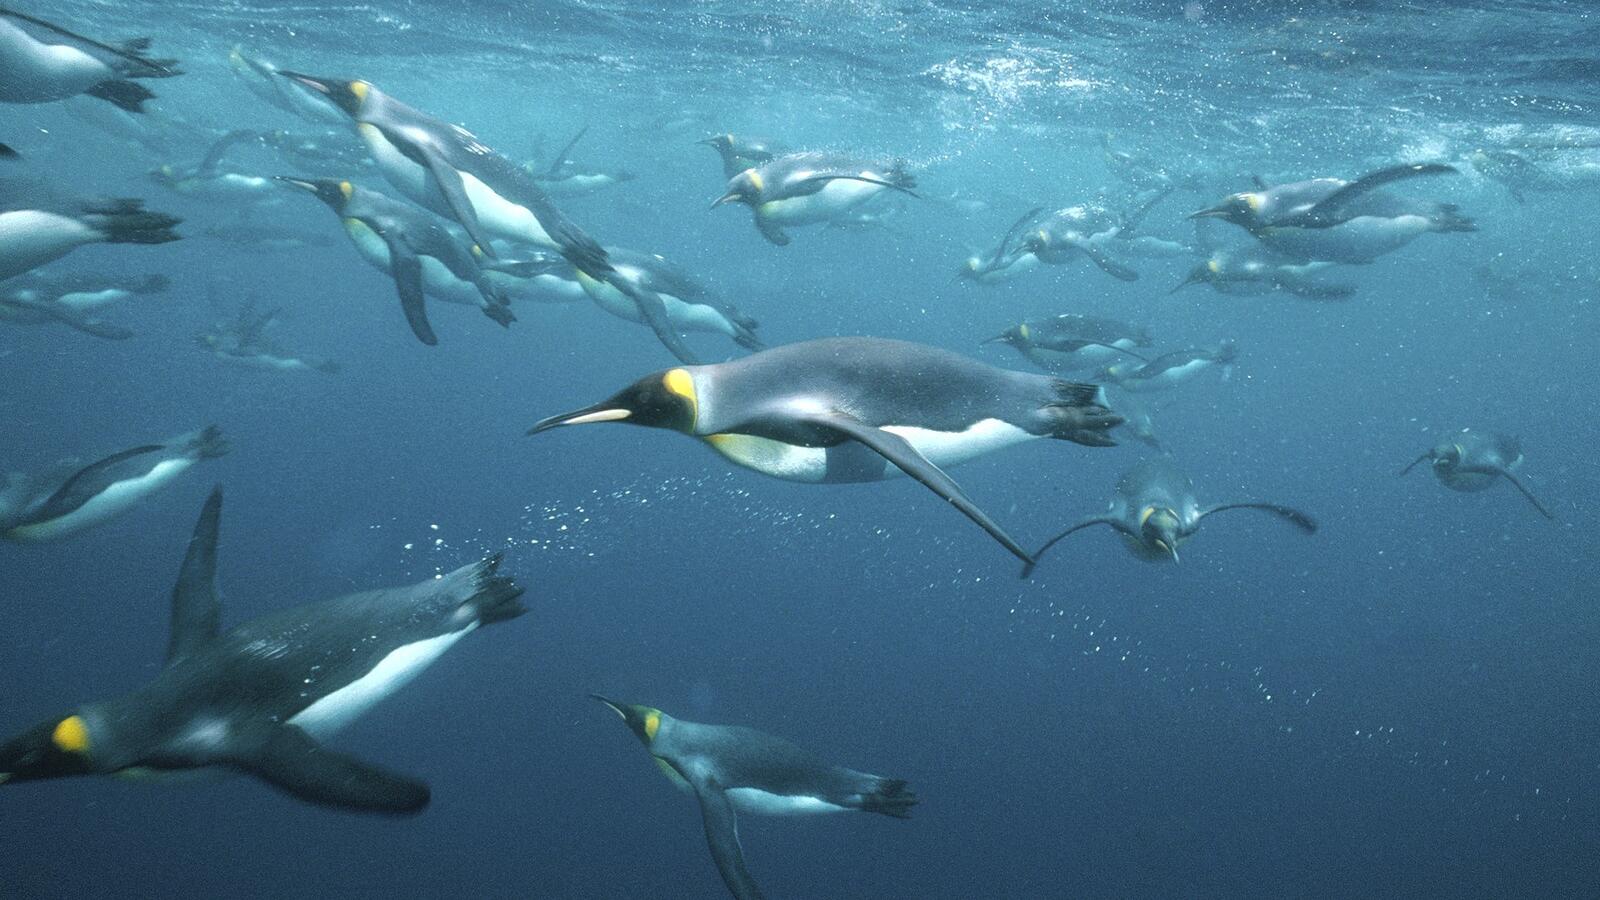 Wallpapers penguins in the ocean under water on the desktop